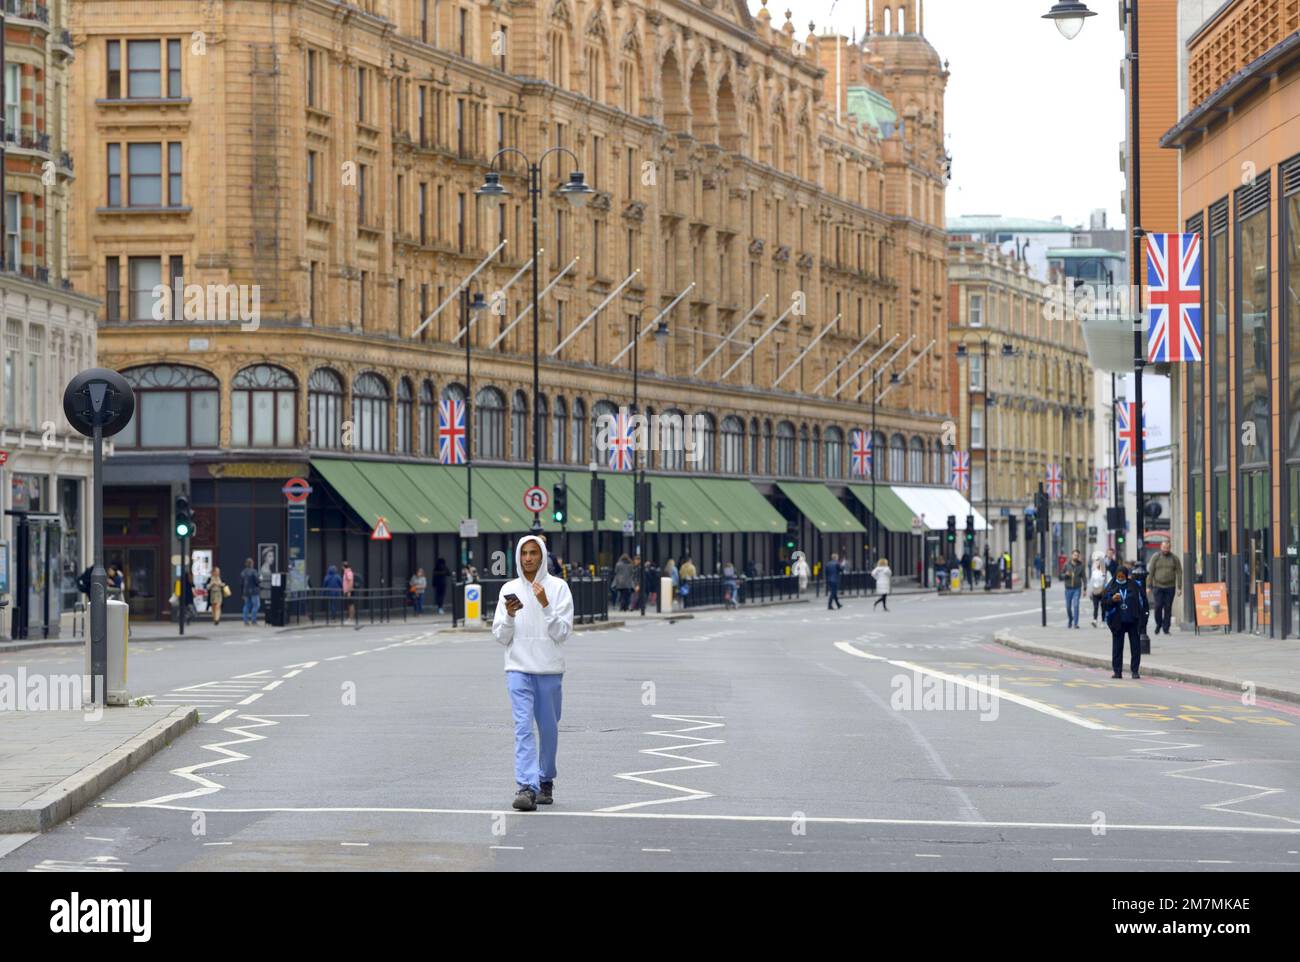 Londres, Angleterre, Royaume-Uni. Harrods grand magasin dans un Knightbridge presque déserté le jour des funérailles de la reine Elizabeth II, le 19th septembre 2022 Banque D'Images